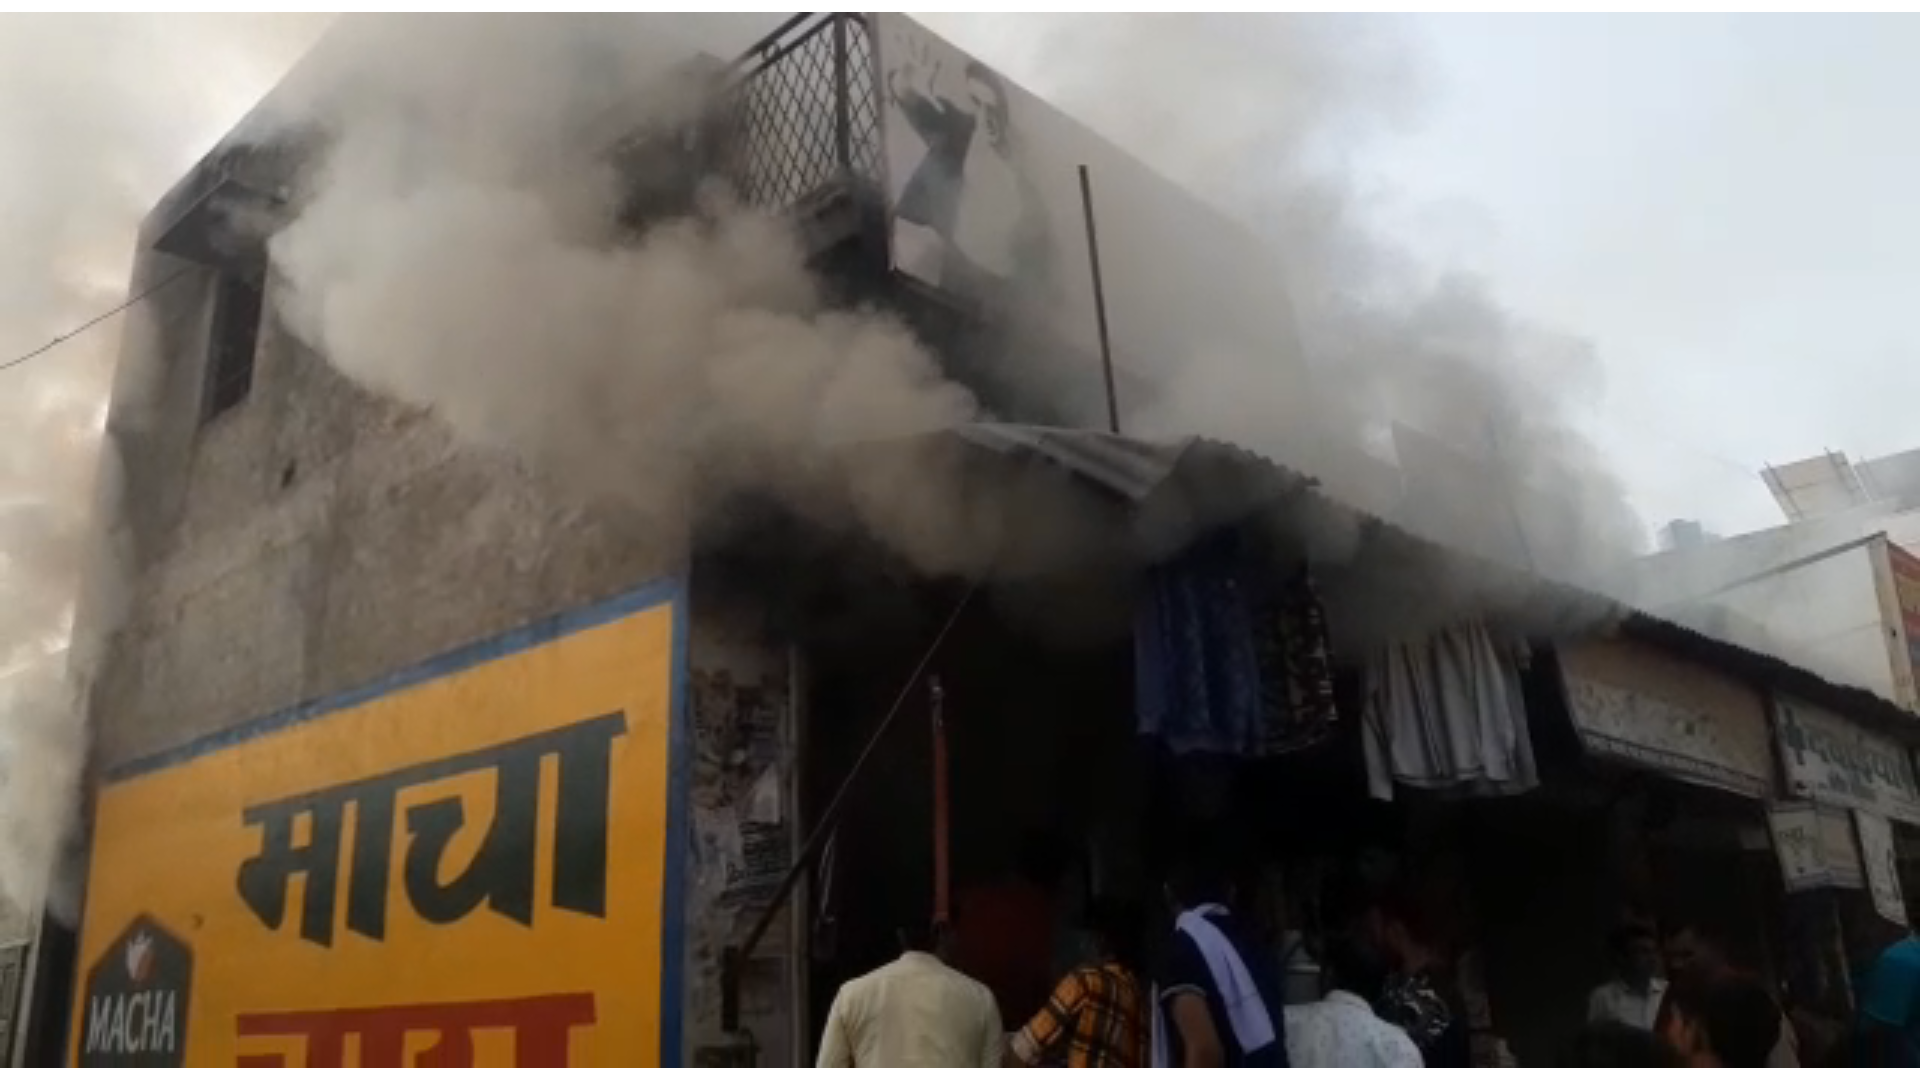 हरियाणा के चरखी दादरी इलाके की एक दुकान विक्की फैशन प्वाइंट व बूट हाउस में भयानक आग लगने की खबर सामने आई है। Total tv, News haryana, Live,